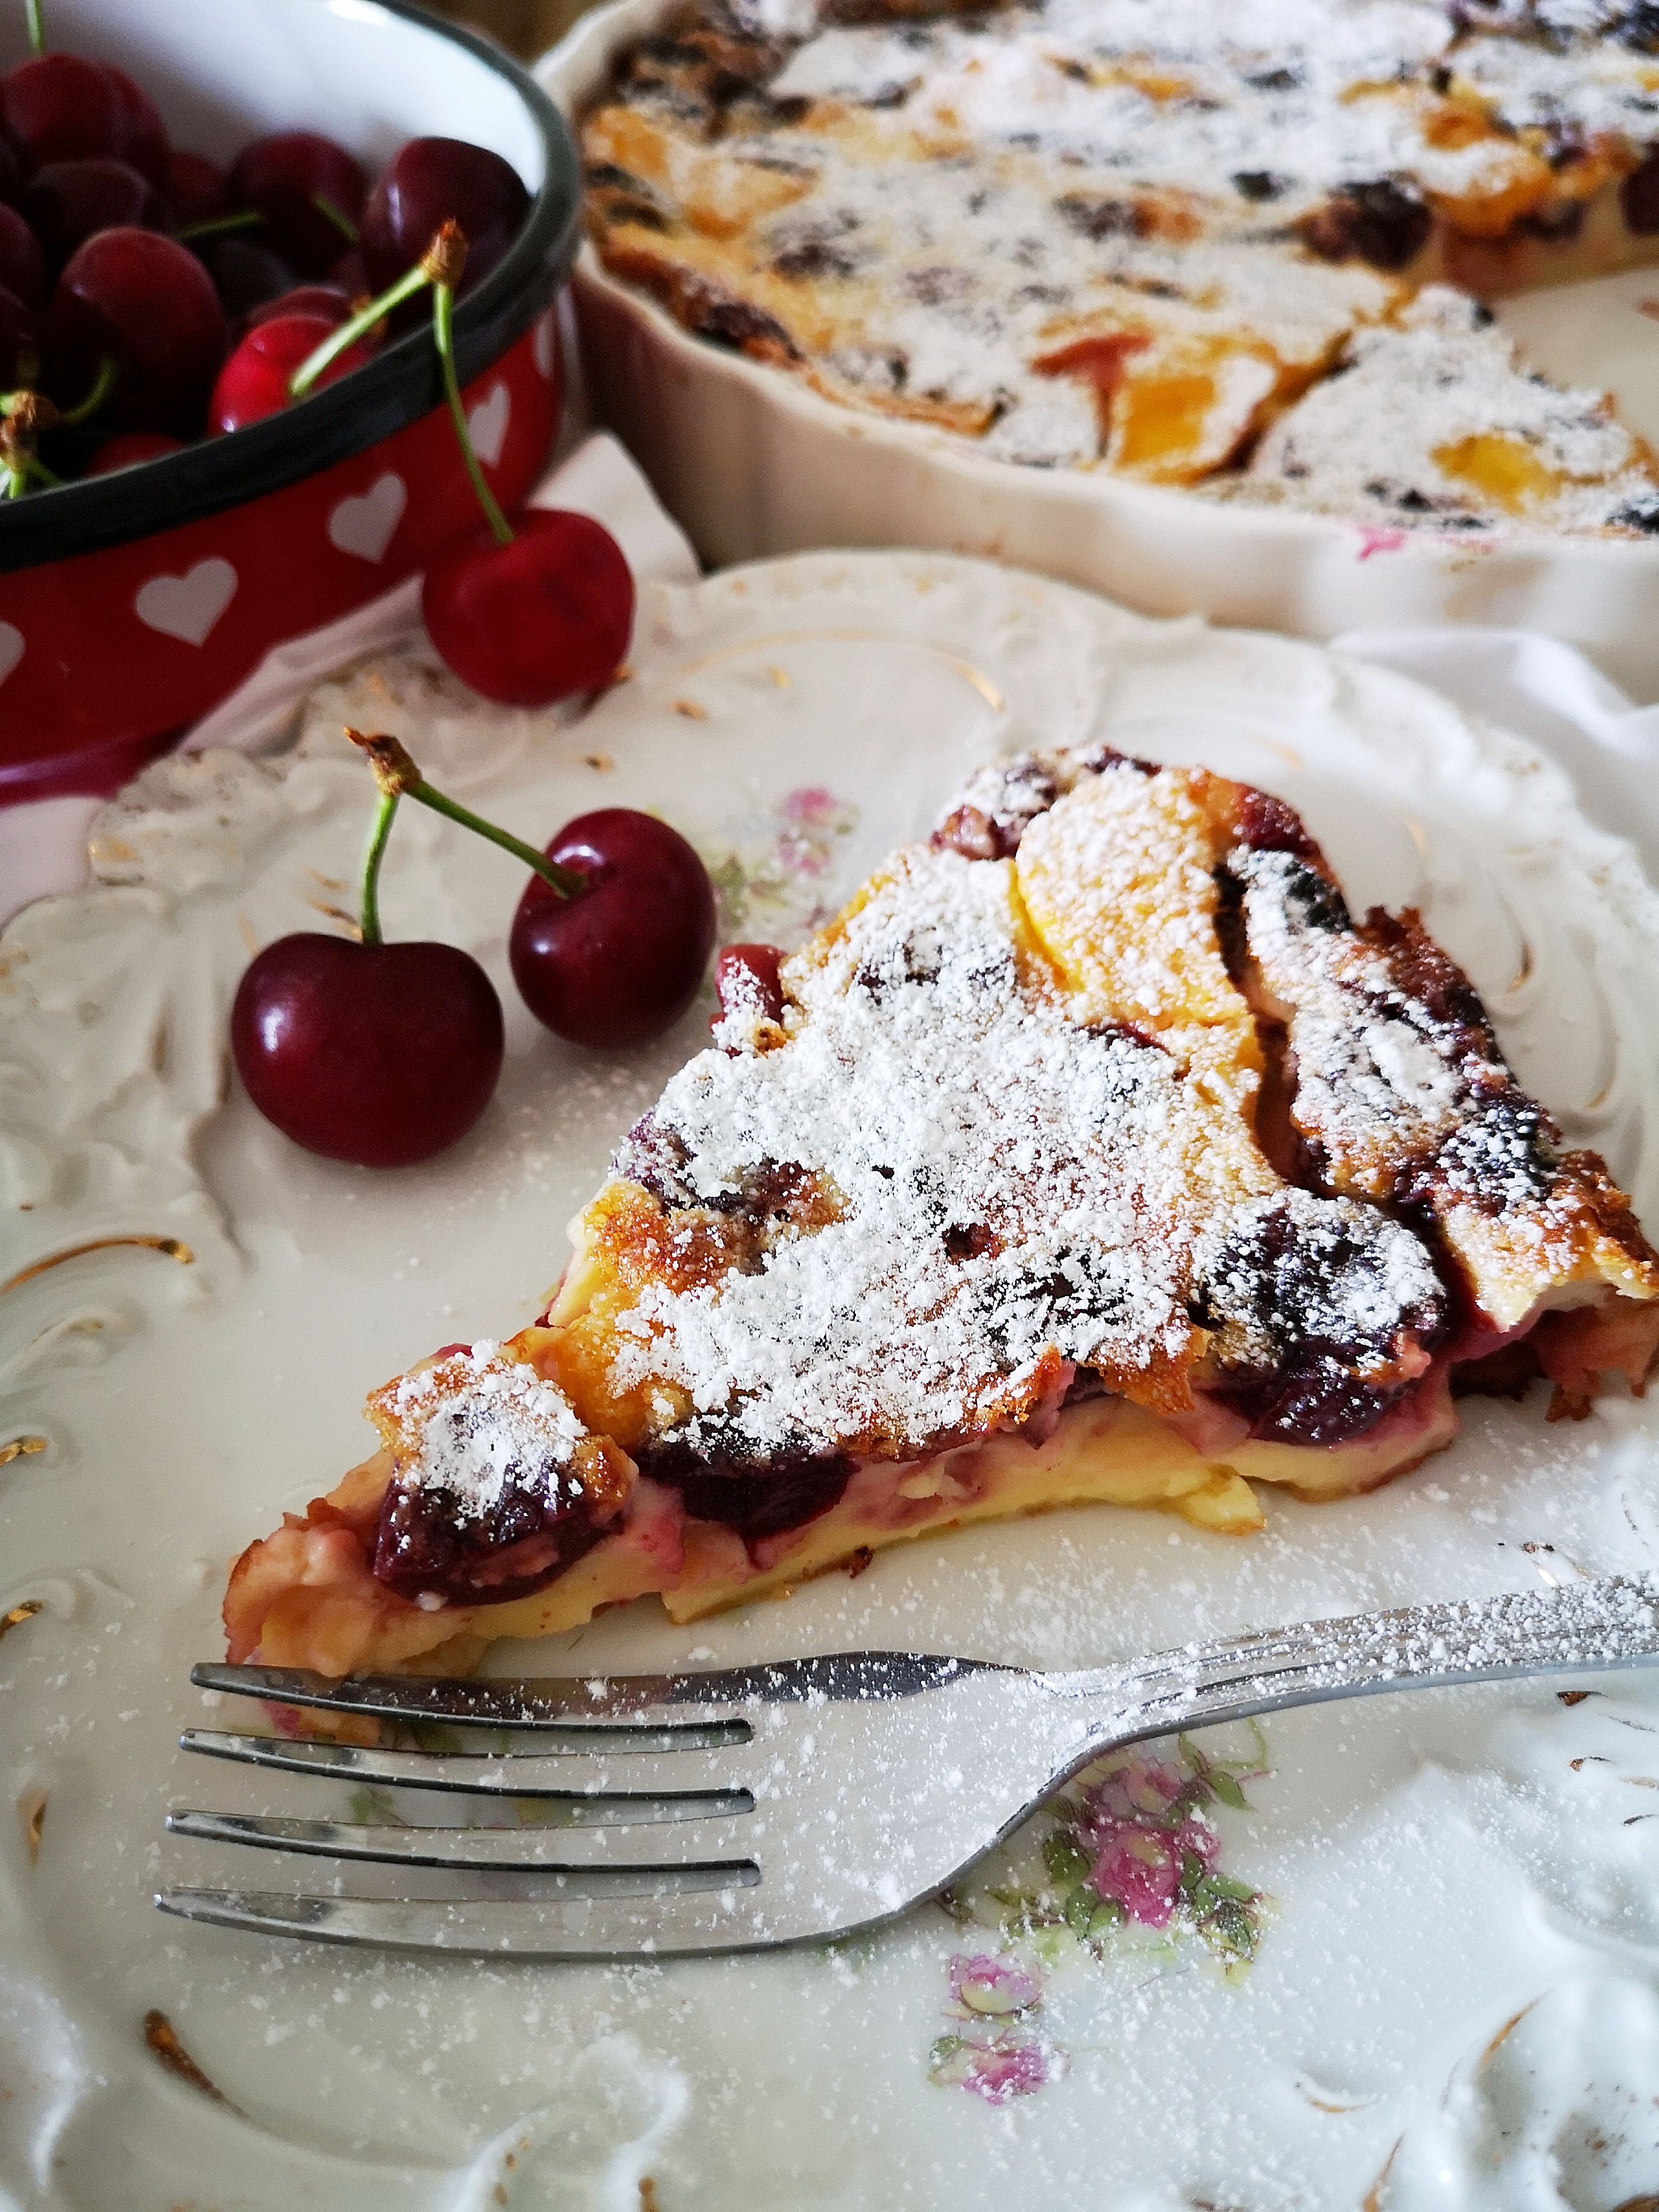 Kao stvoren za ljetne dane: Domaća blogerica podijelila nam je recept za ukusnu francusku deliciju s trešnjama